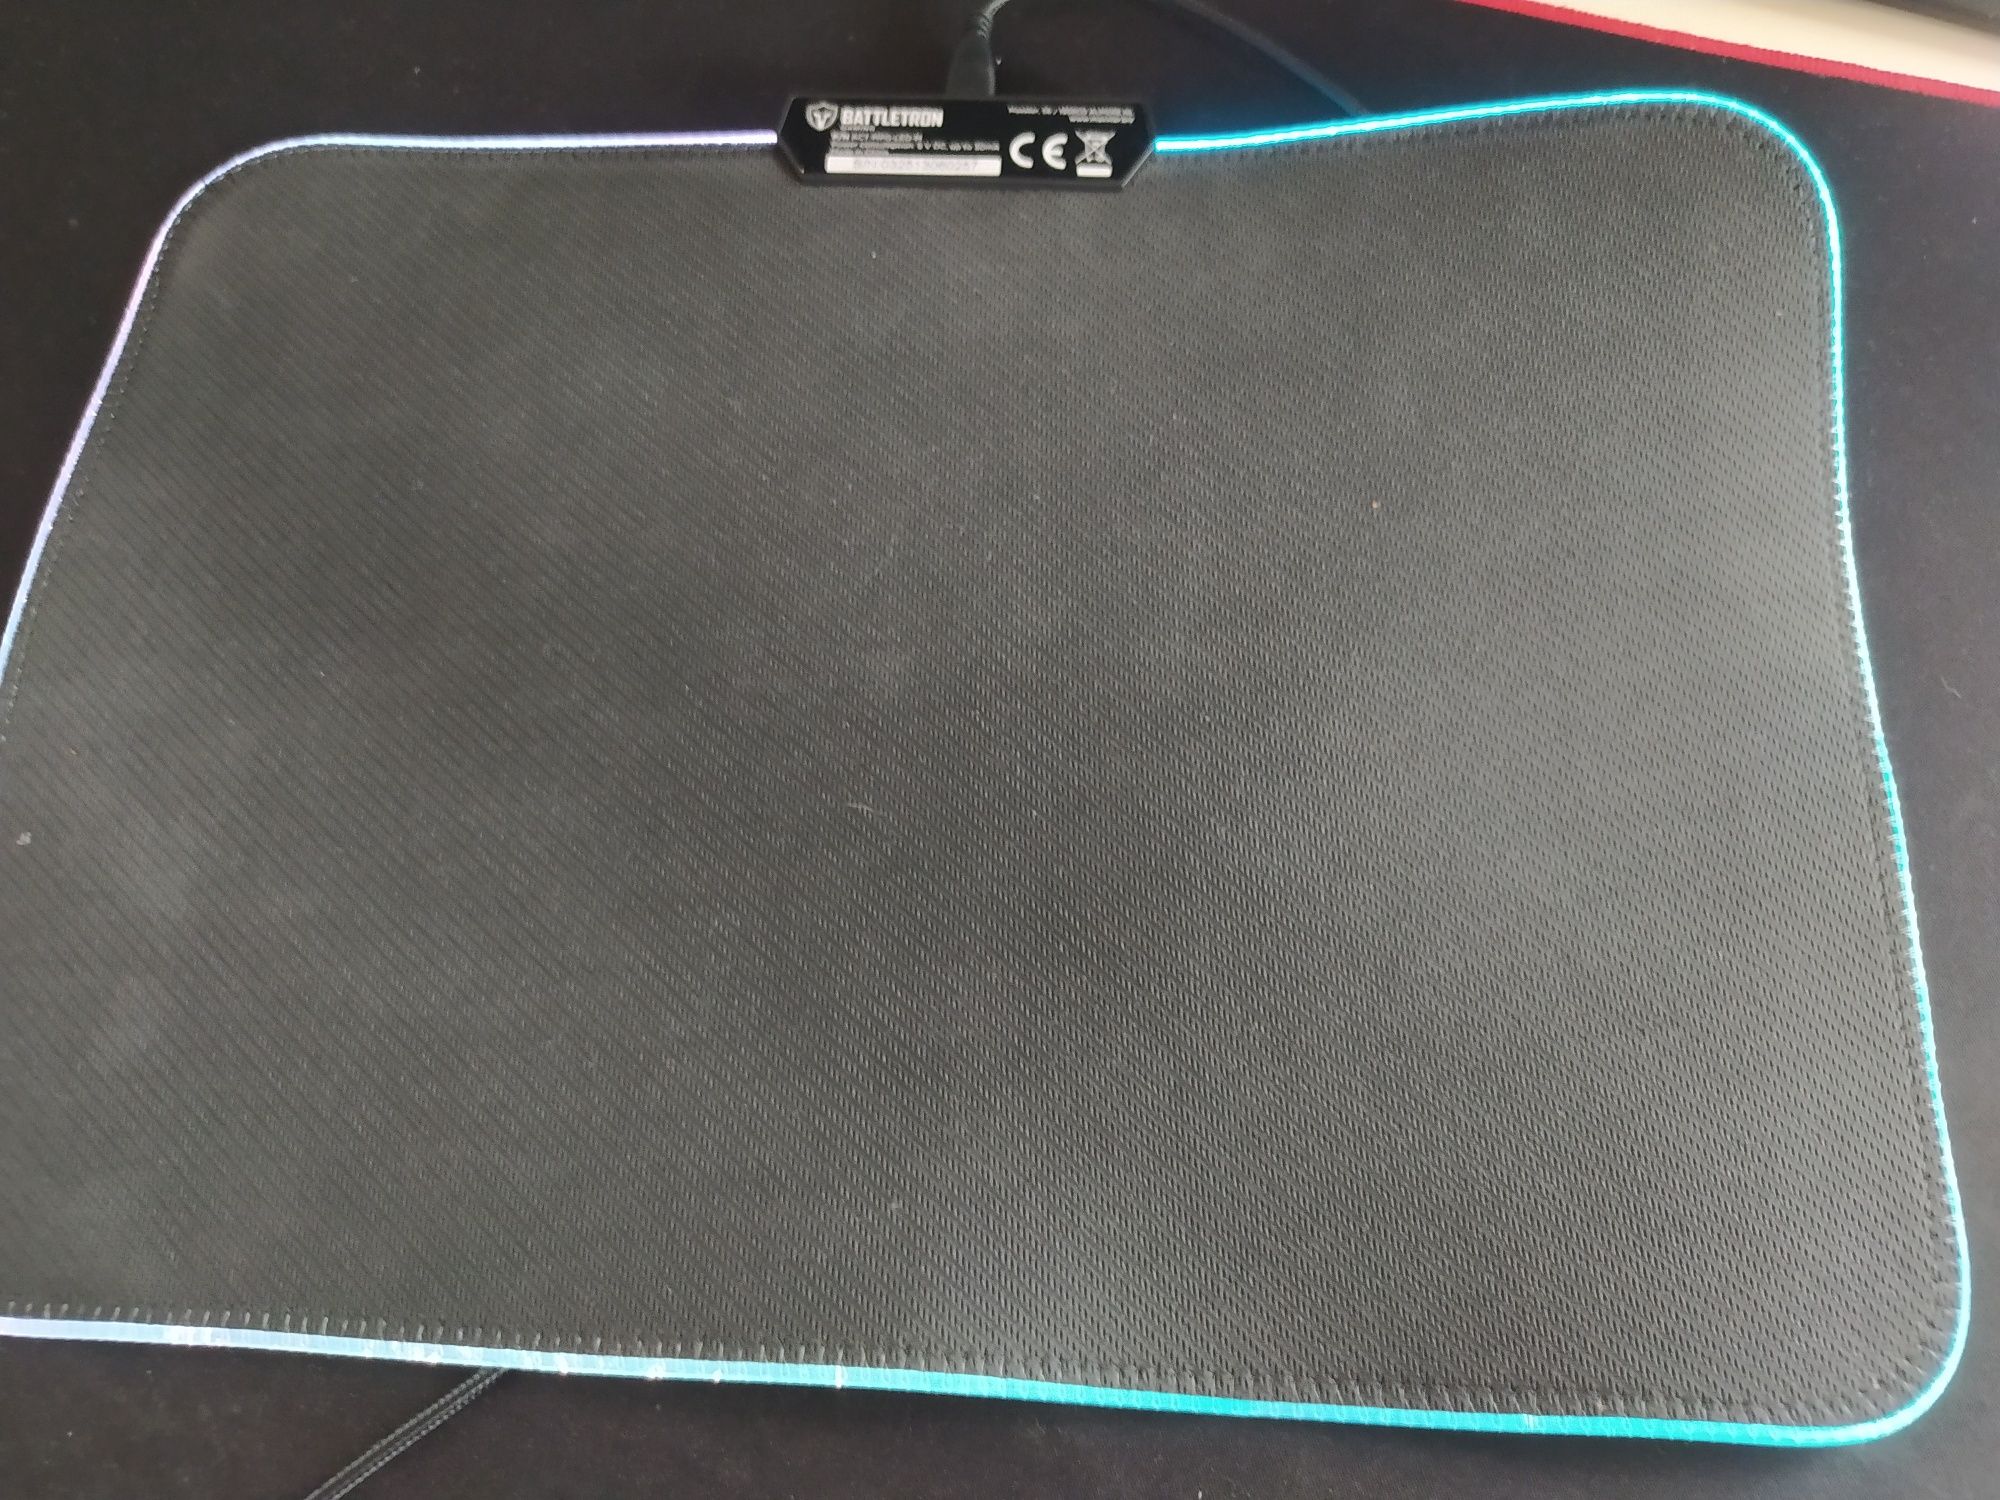 Podświetlana Podkładka gamingowa pod mysz Battlefront myszkę mouse pad